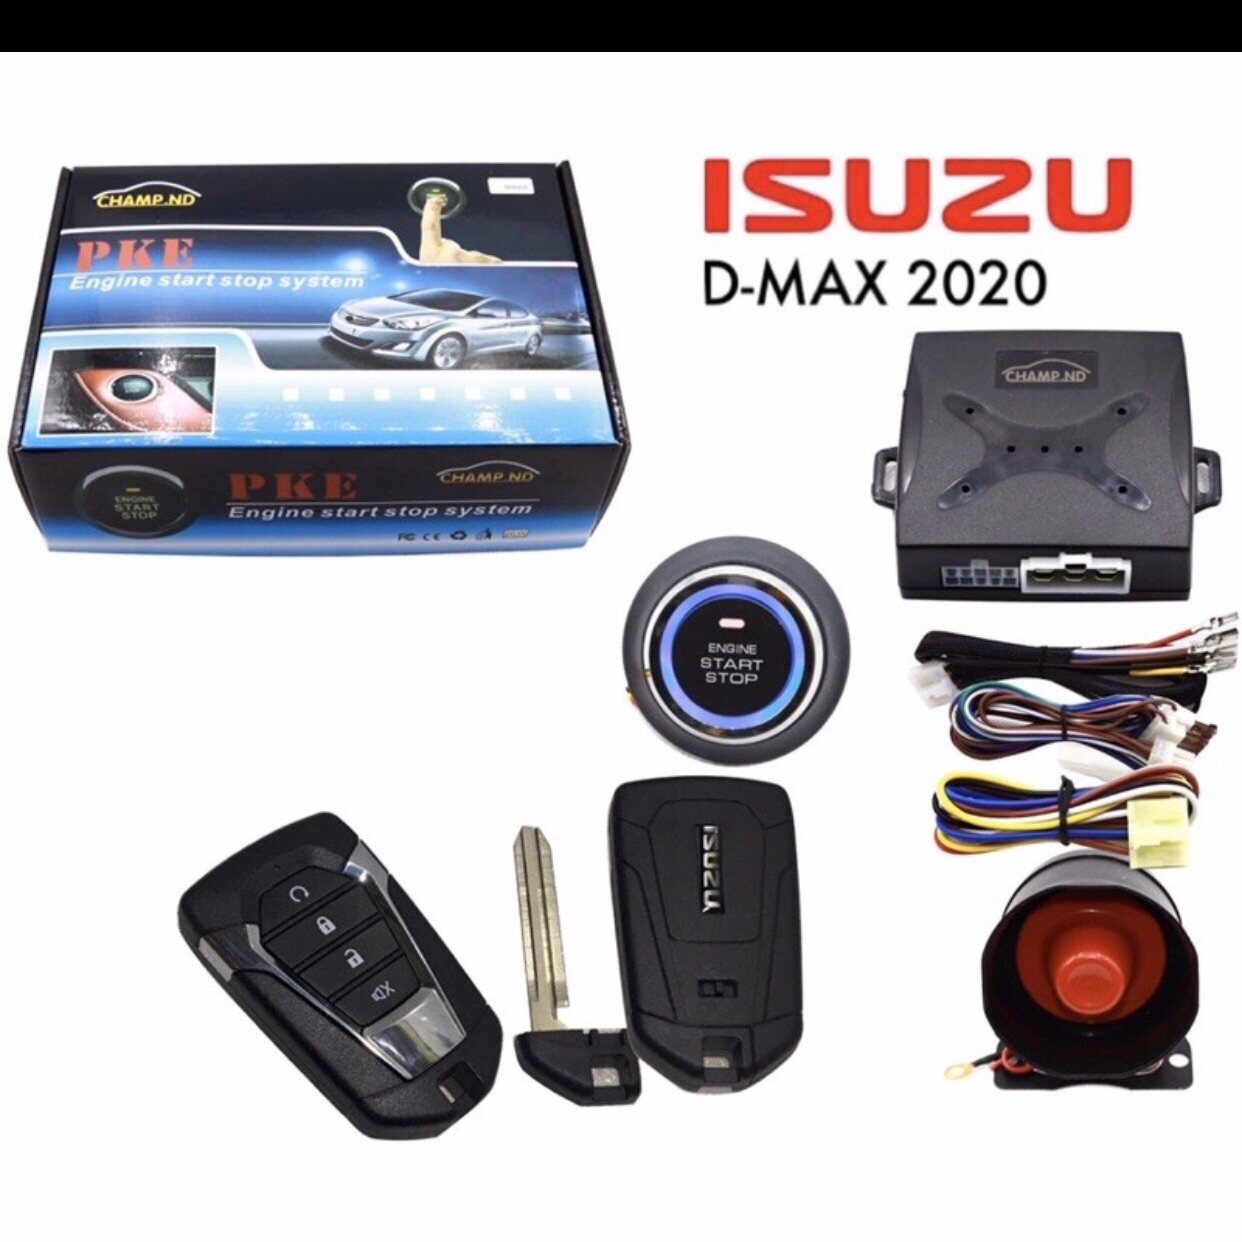 ชุดปุ่มกด Start+รีโมทสมาร์มคีย์ ตรงรถรุ่น Isuzu -max 2020